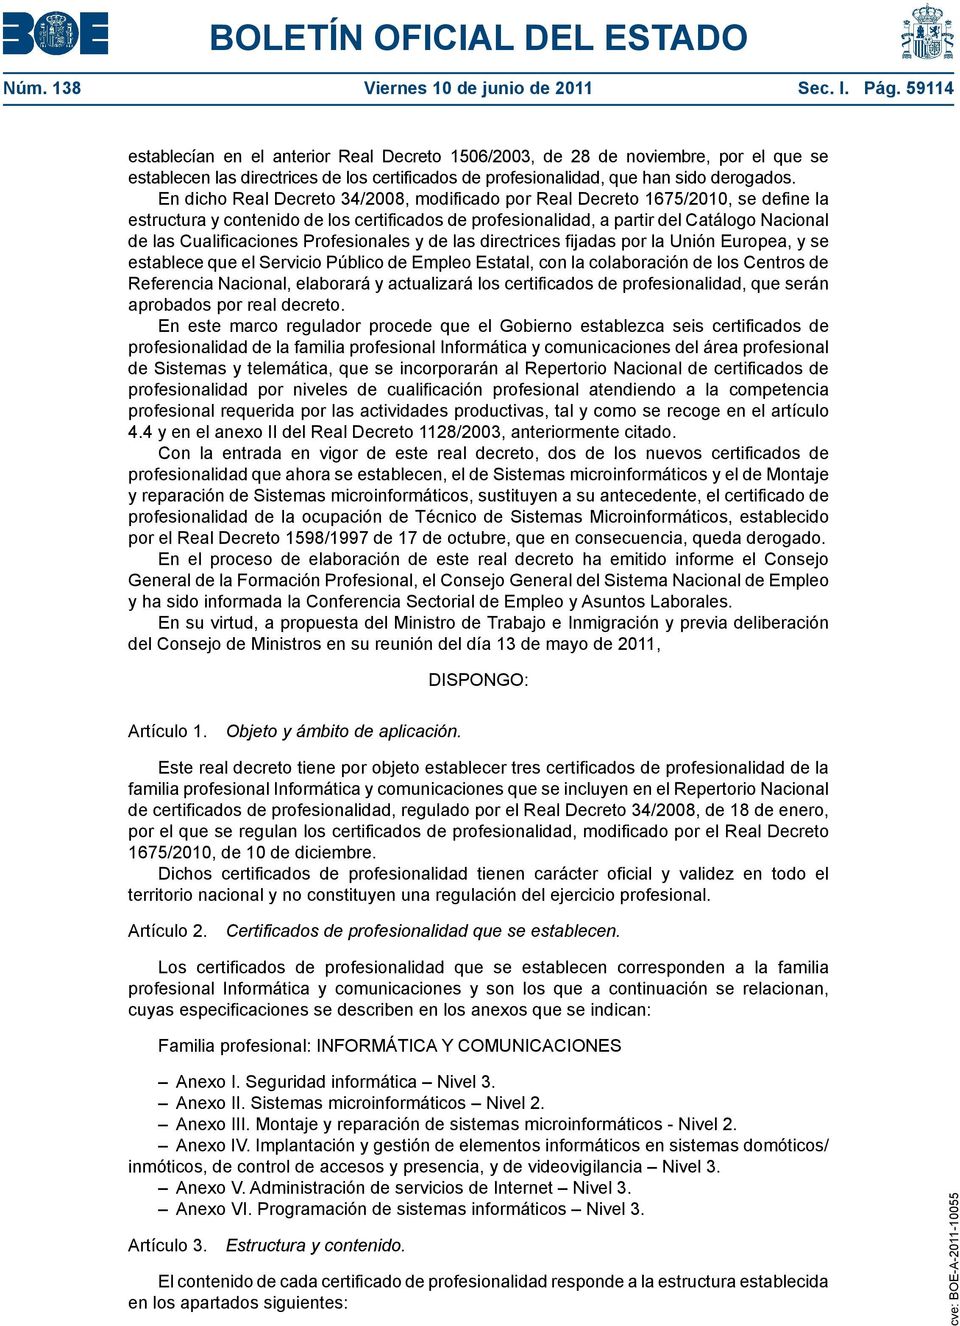 En dicho Real Decreto 34/2008, modificado por Real Decreto 1675/2010, se define la estructura y contenido de los certificados de profesionalidad, a partir del Catálogo Nacional de las Cualificaciones